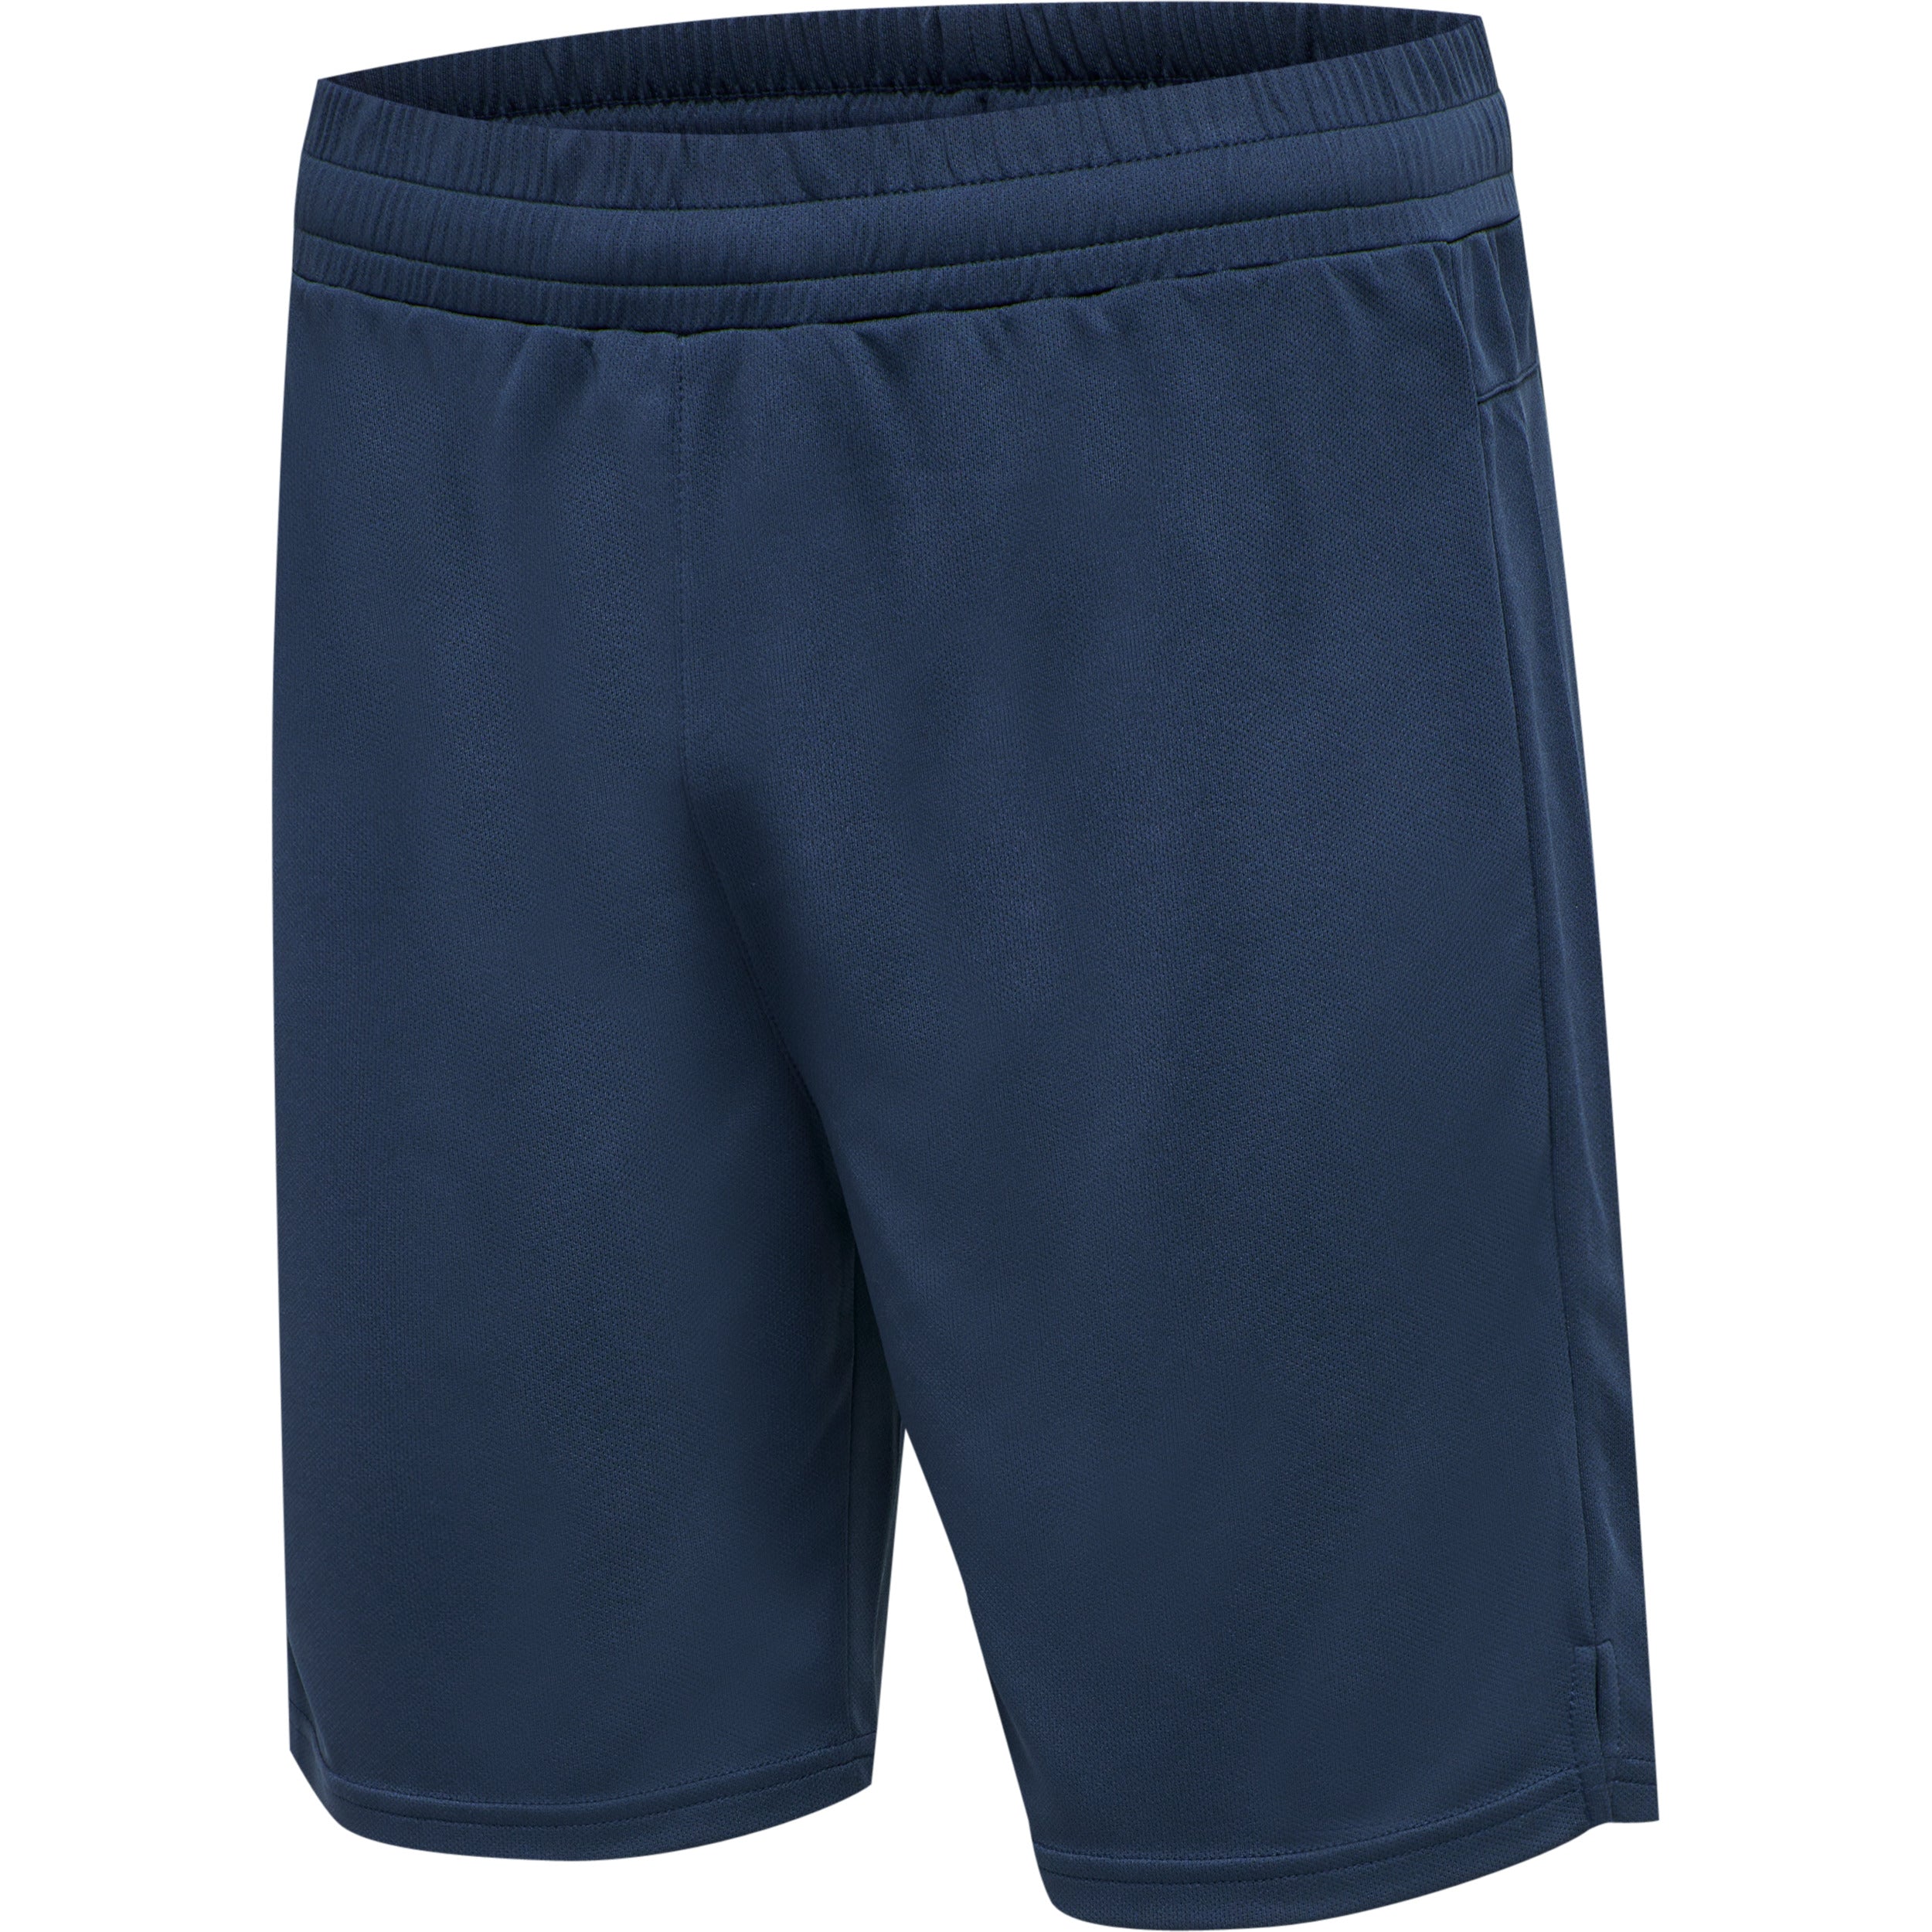 Brug Hummel Topaz Shorts  -  Insignia Blue til en forbedret oplevelse